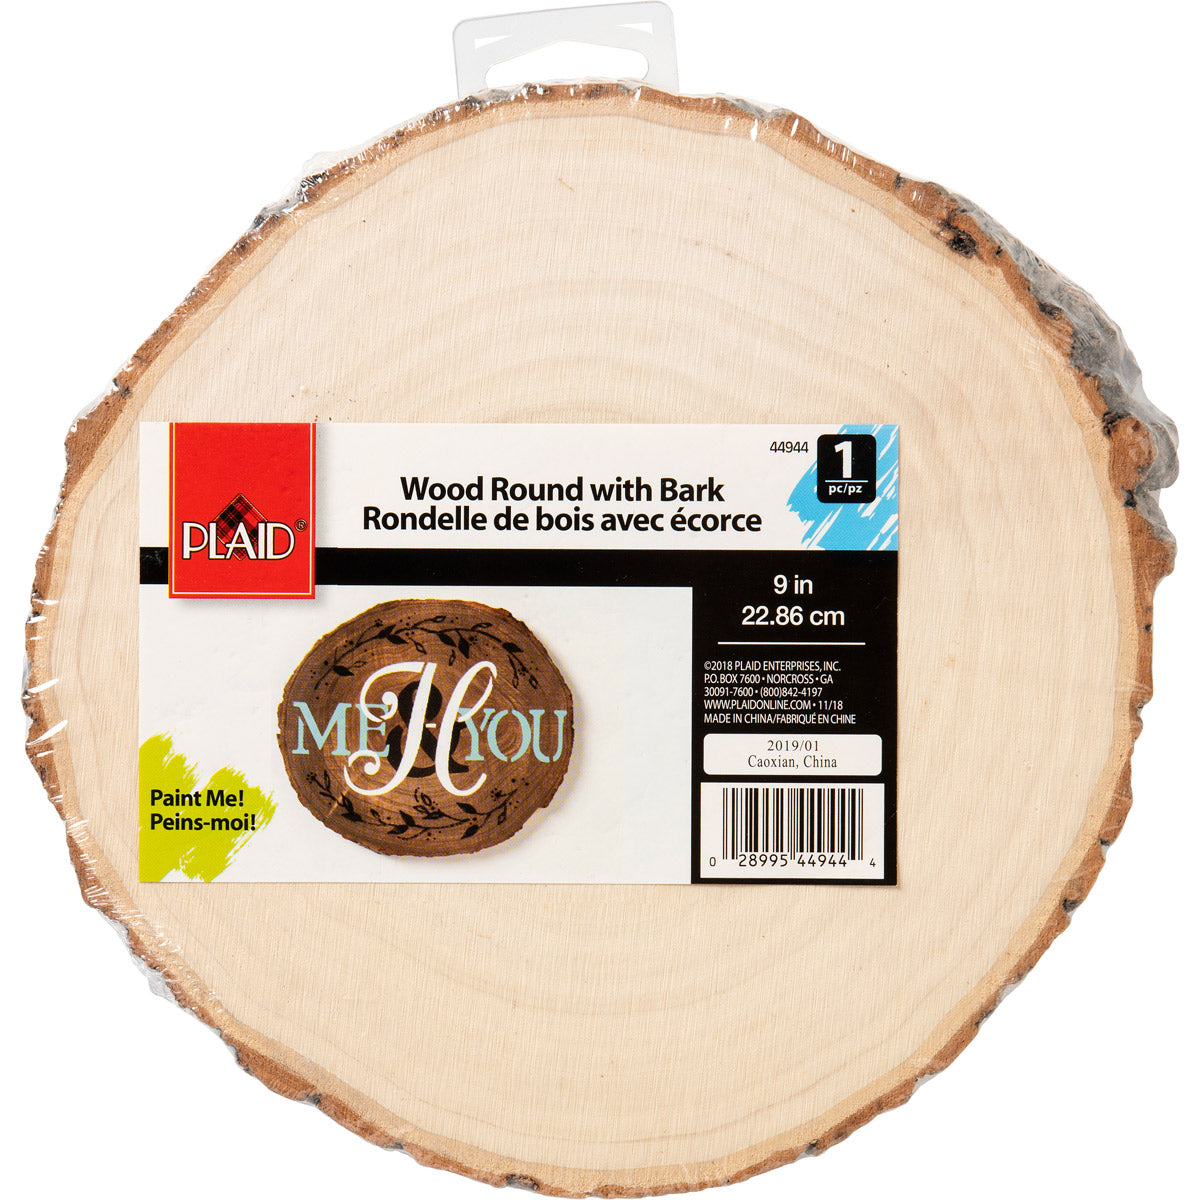 Bark Wood Round